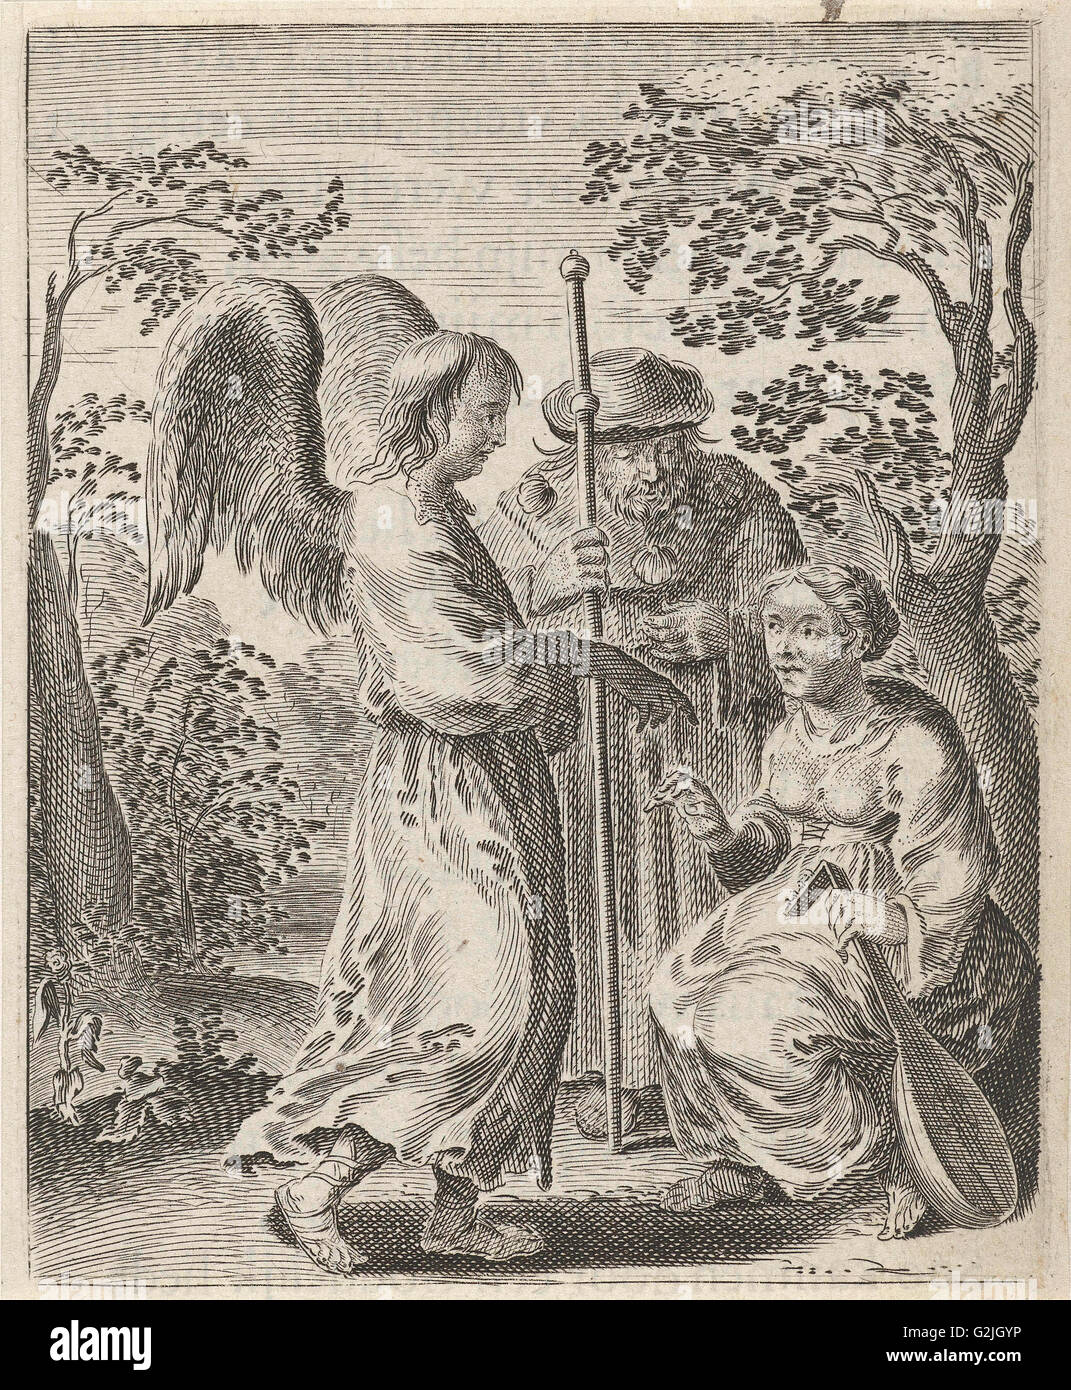 In eine Landschaft ist ein Pilger mit Pilgrim es Personal und Jakobsmuscheln auf seinem Mantel, neben ihm sitzt eine Frau mit einer Laute in die Hände Stockfoto